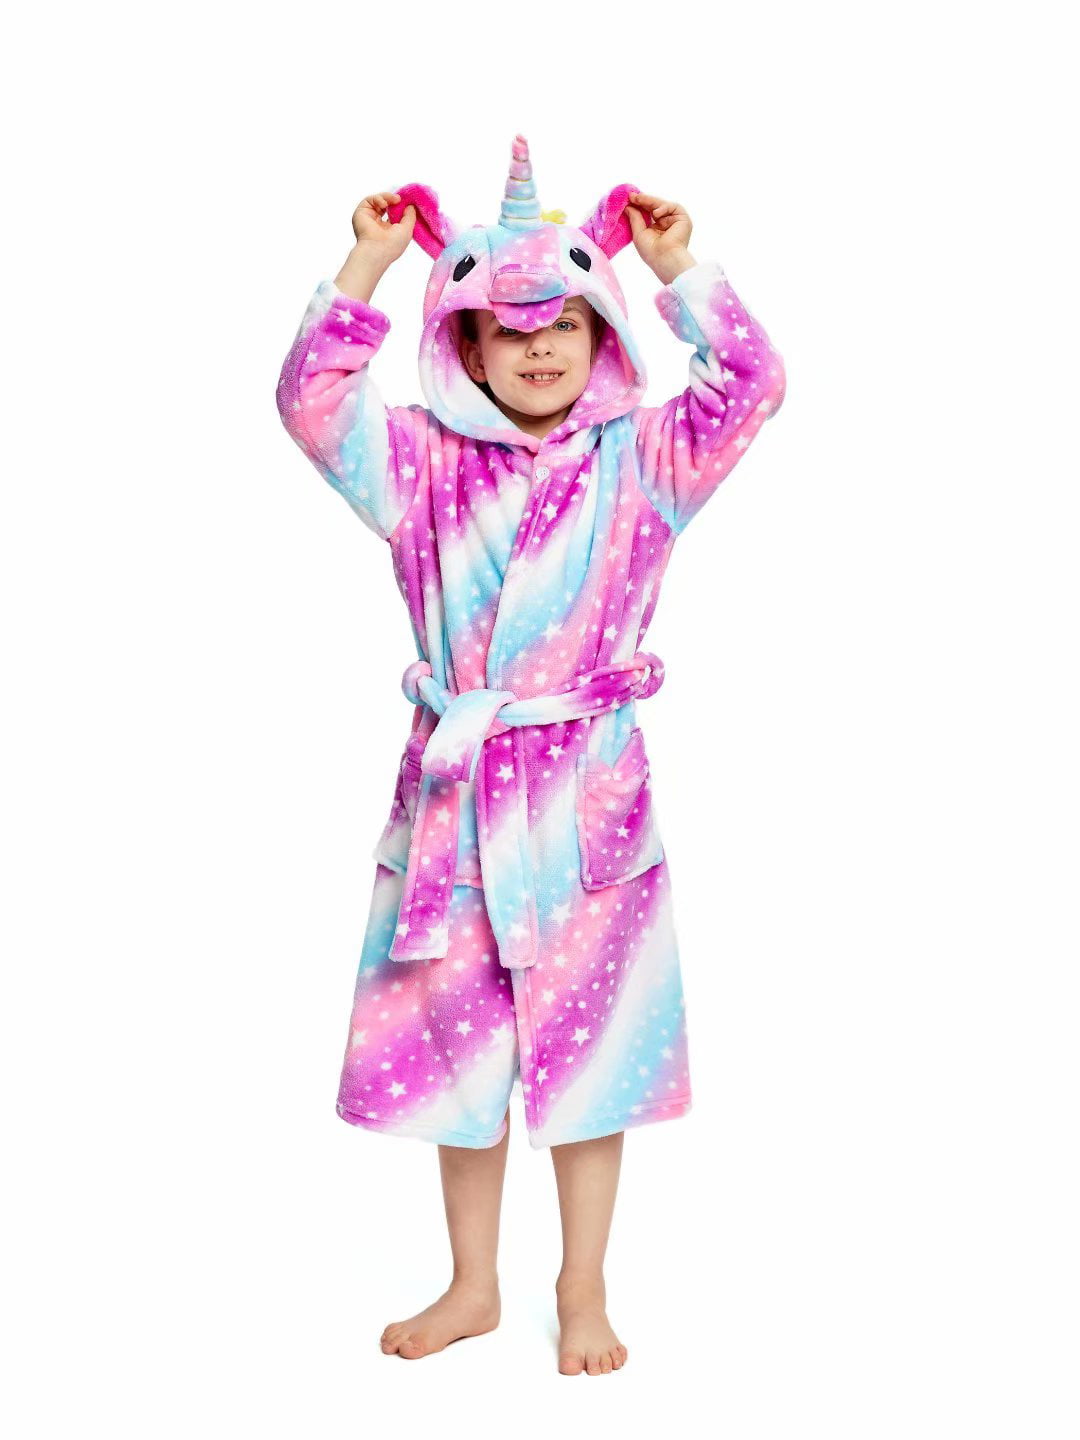 UsHigh Kids Unicorn Bathrobe Flannel Soft Sleepwear Gift Comfy Four Season 